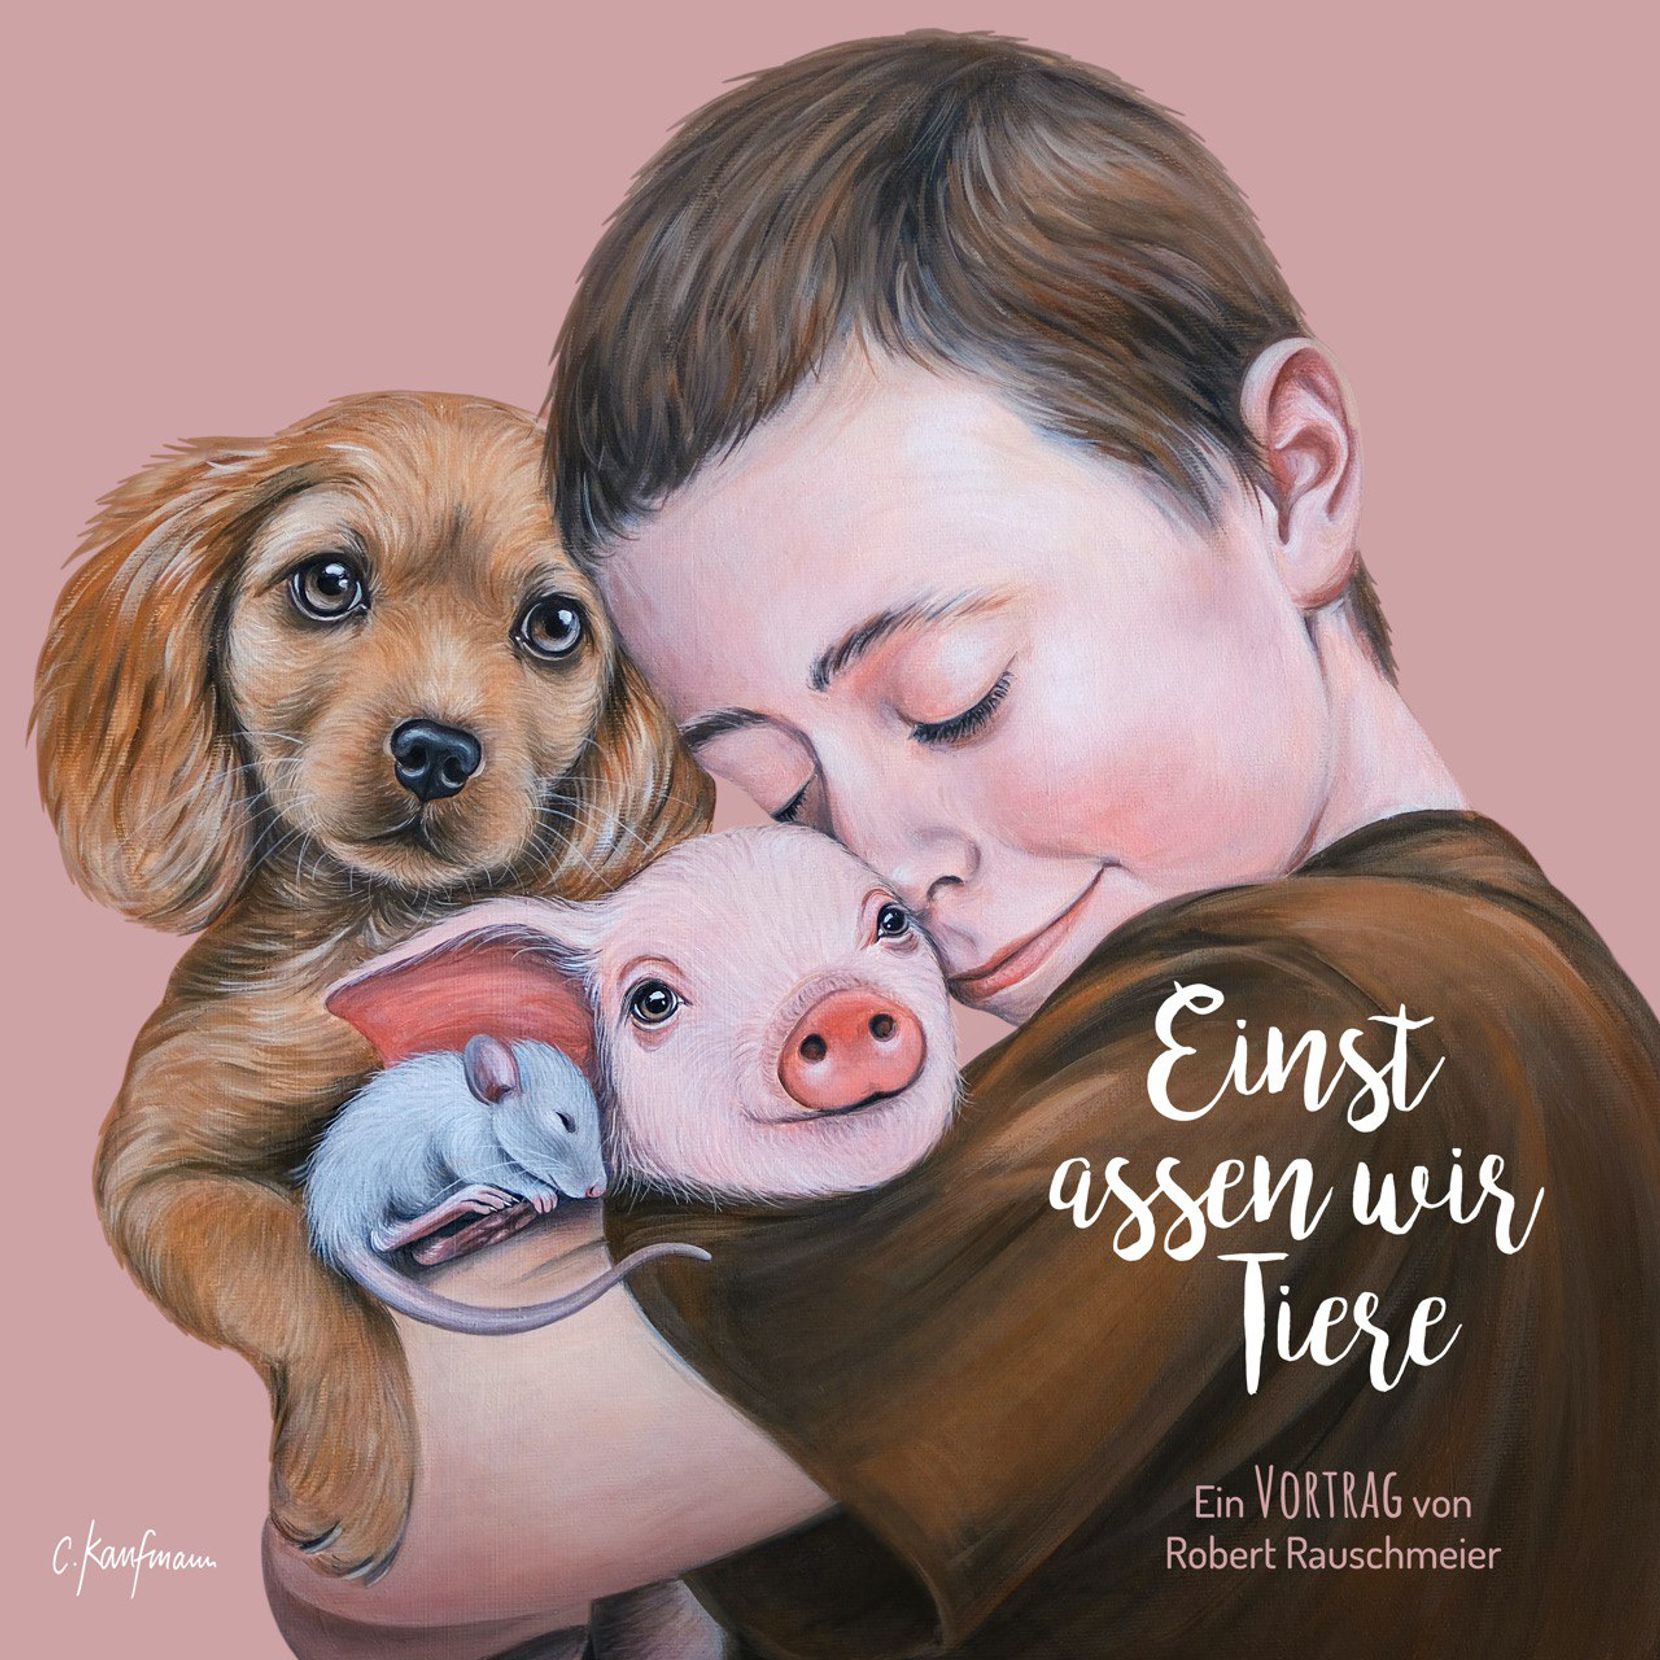 Man sieht ein Kunstwerk von Chantal Kaufmann. Es zeigt einen kleines Kind, mit einem Hund, einer Ratte und mit einem Baby-Schwein im Arm.